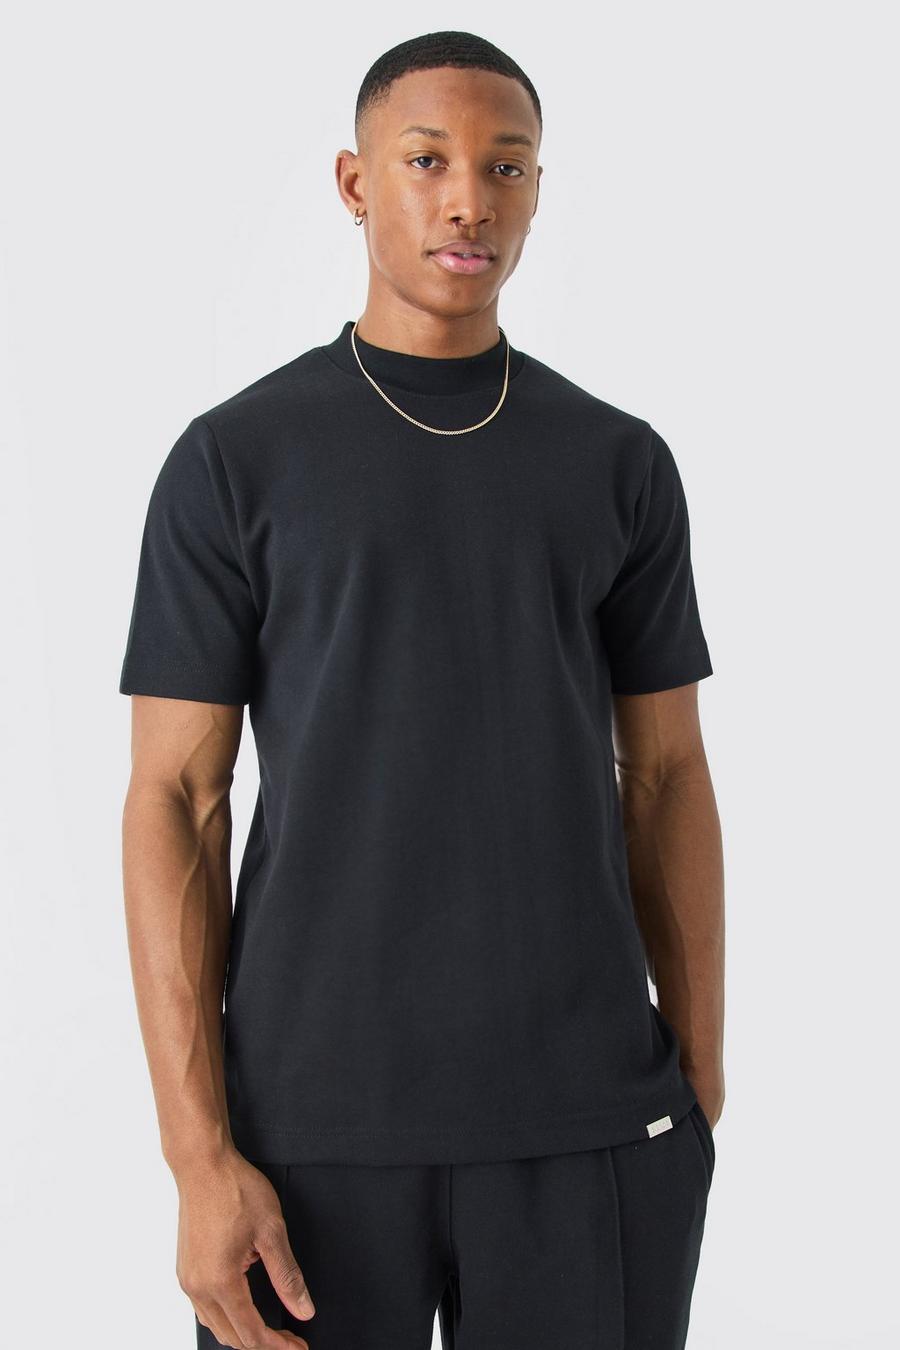 T-shirt Man Slim Fit in maglia intrecciata pesante con girocollo esteso, Black